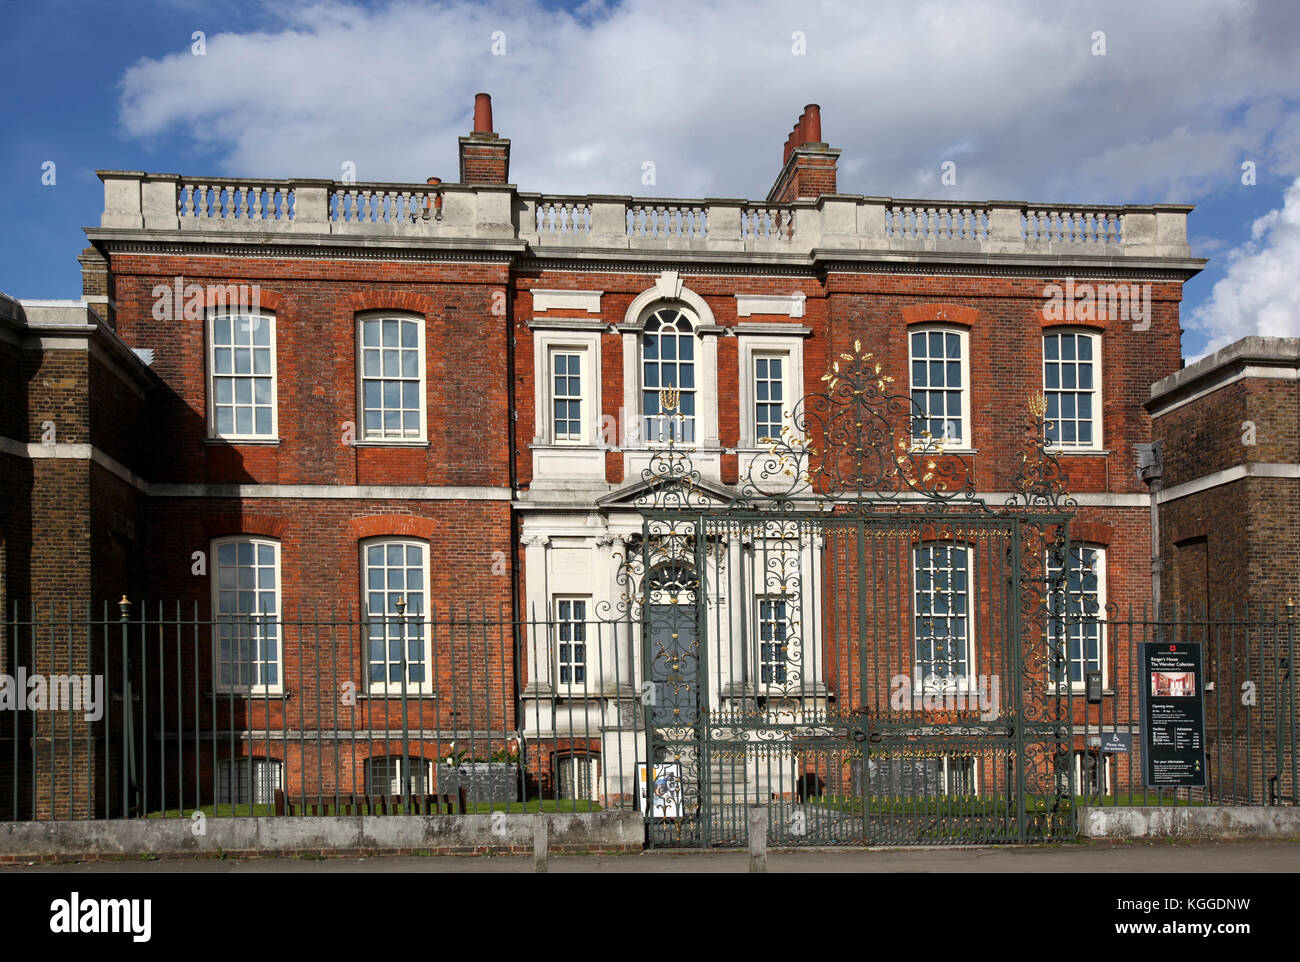 Ranger's house, vu de Shooters Hill road, donnant sur le parc de Greenwich, Blackheath, Londres, UK Banque D'Images